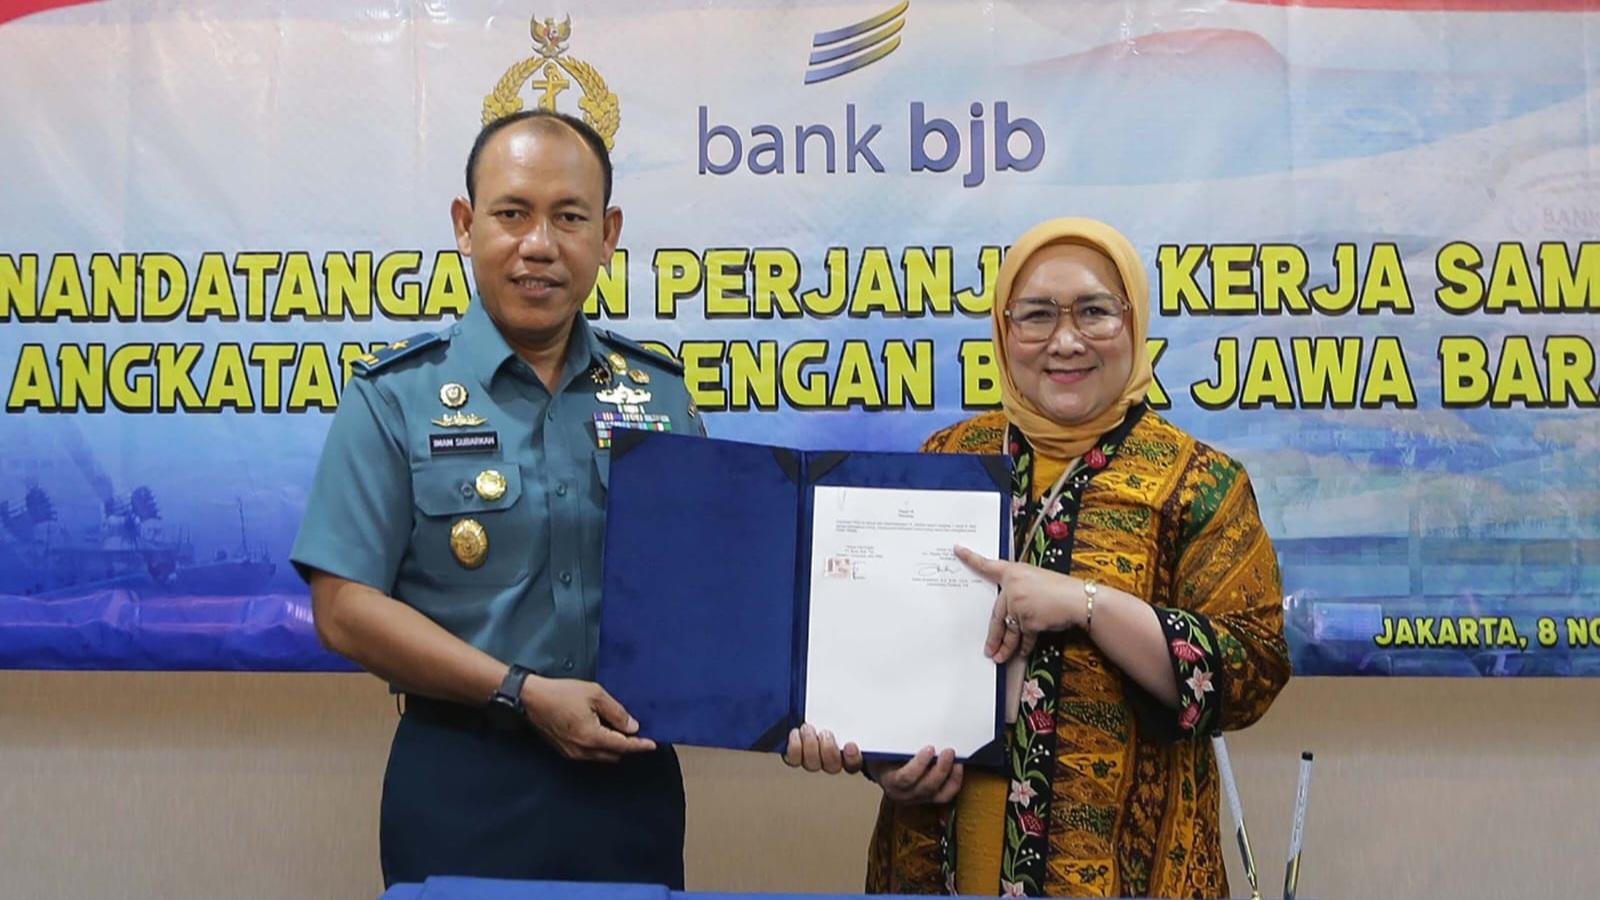 Pihak bank bjb menjalin kerja sama dengan TNI AL.